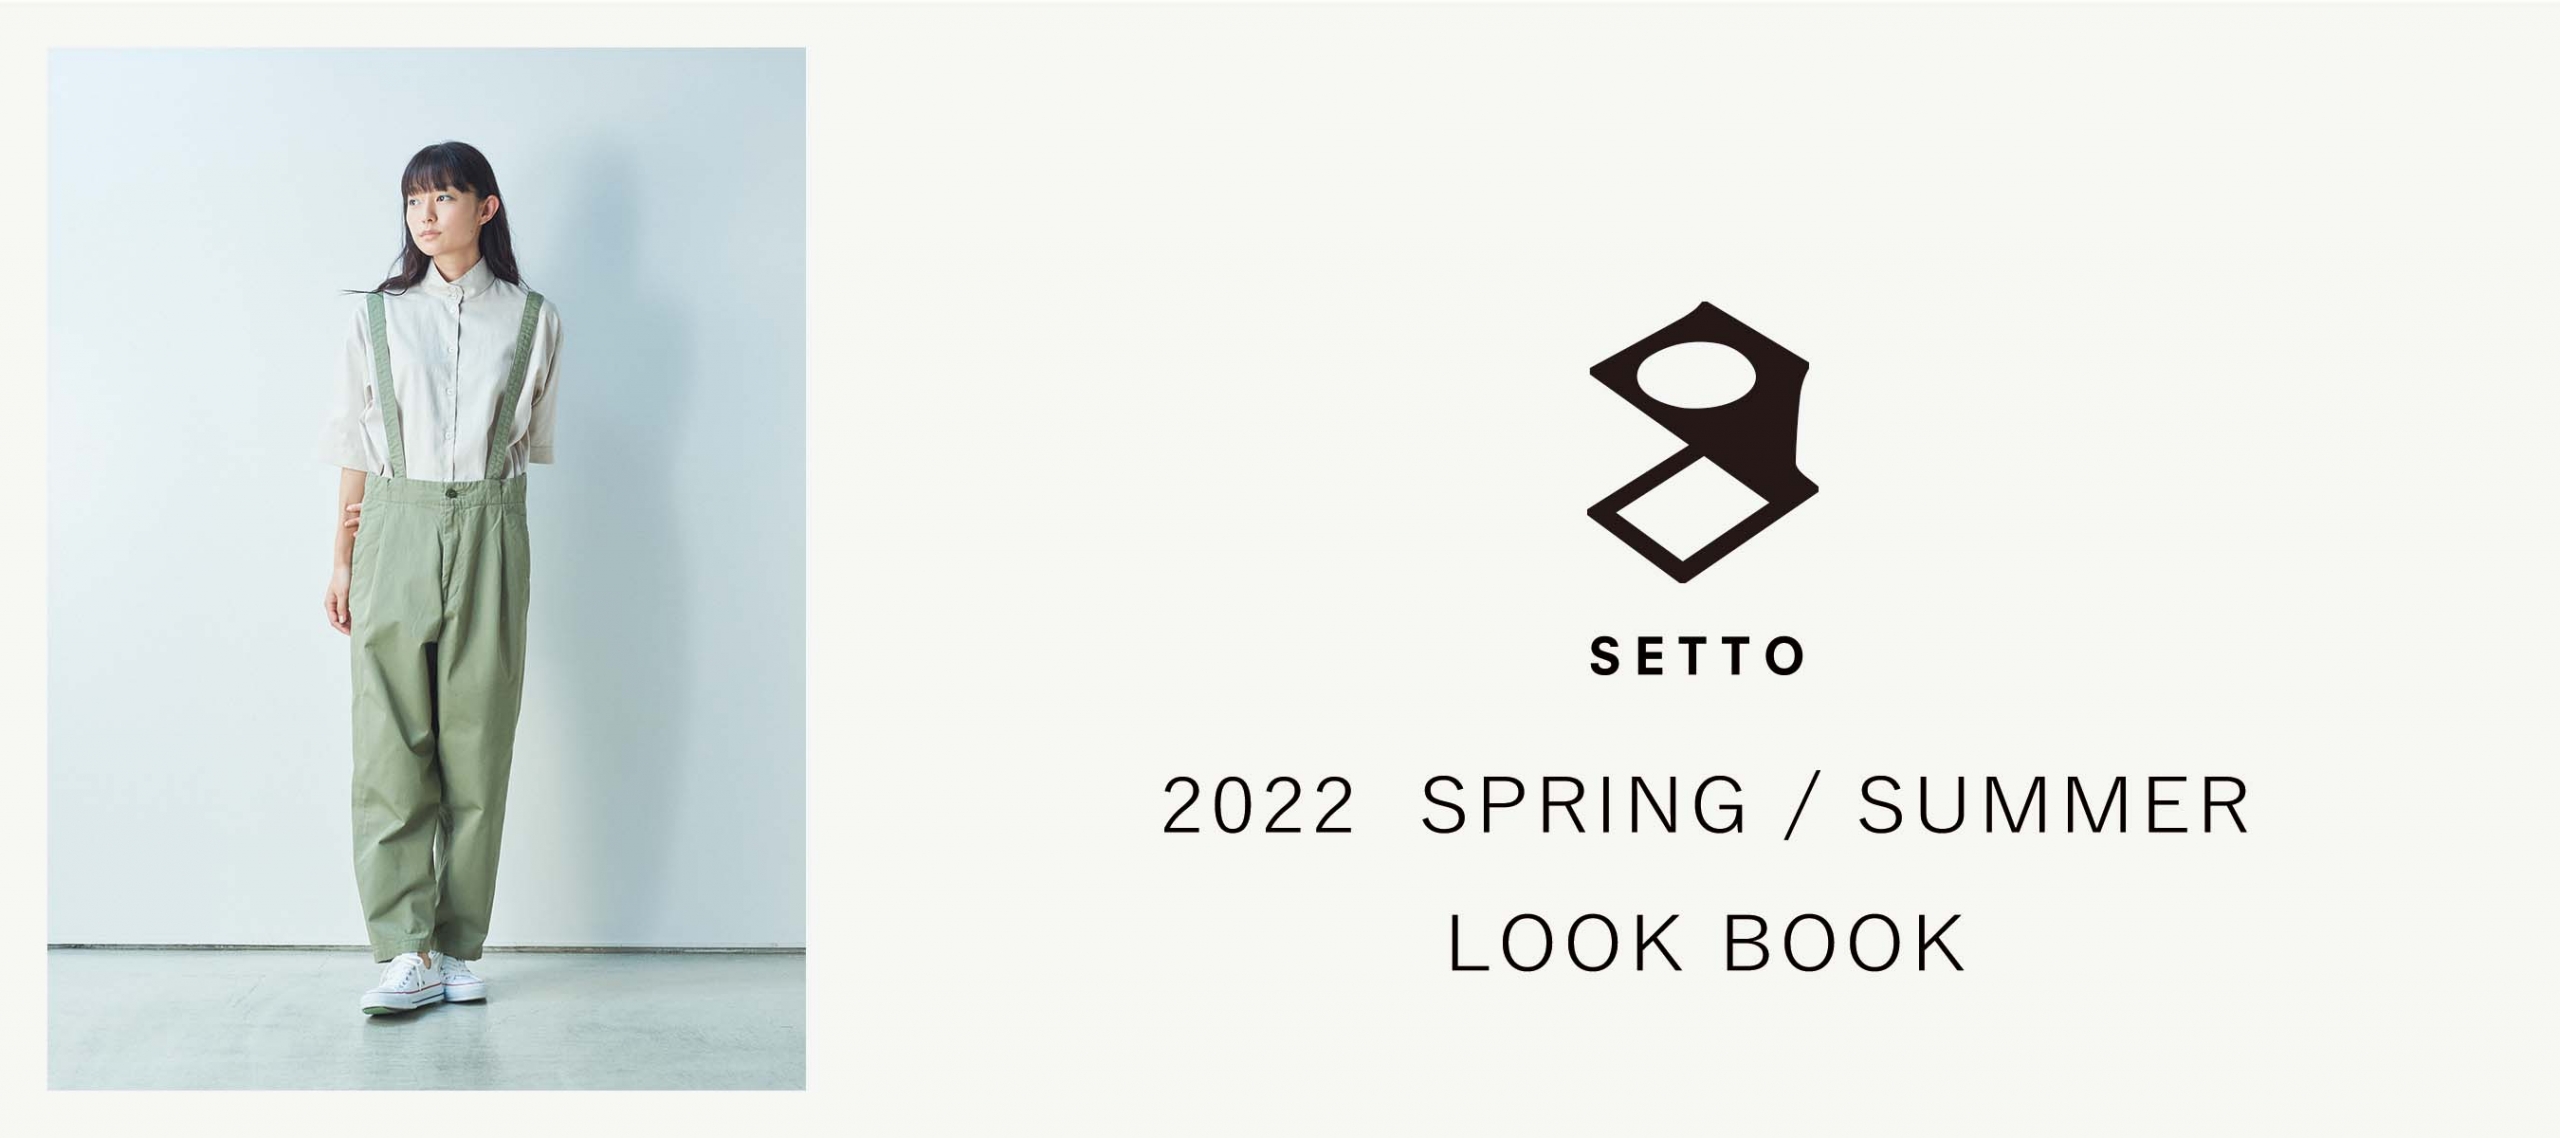 SETTO 2022 spring / summer lookbook